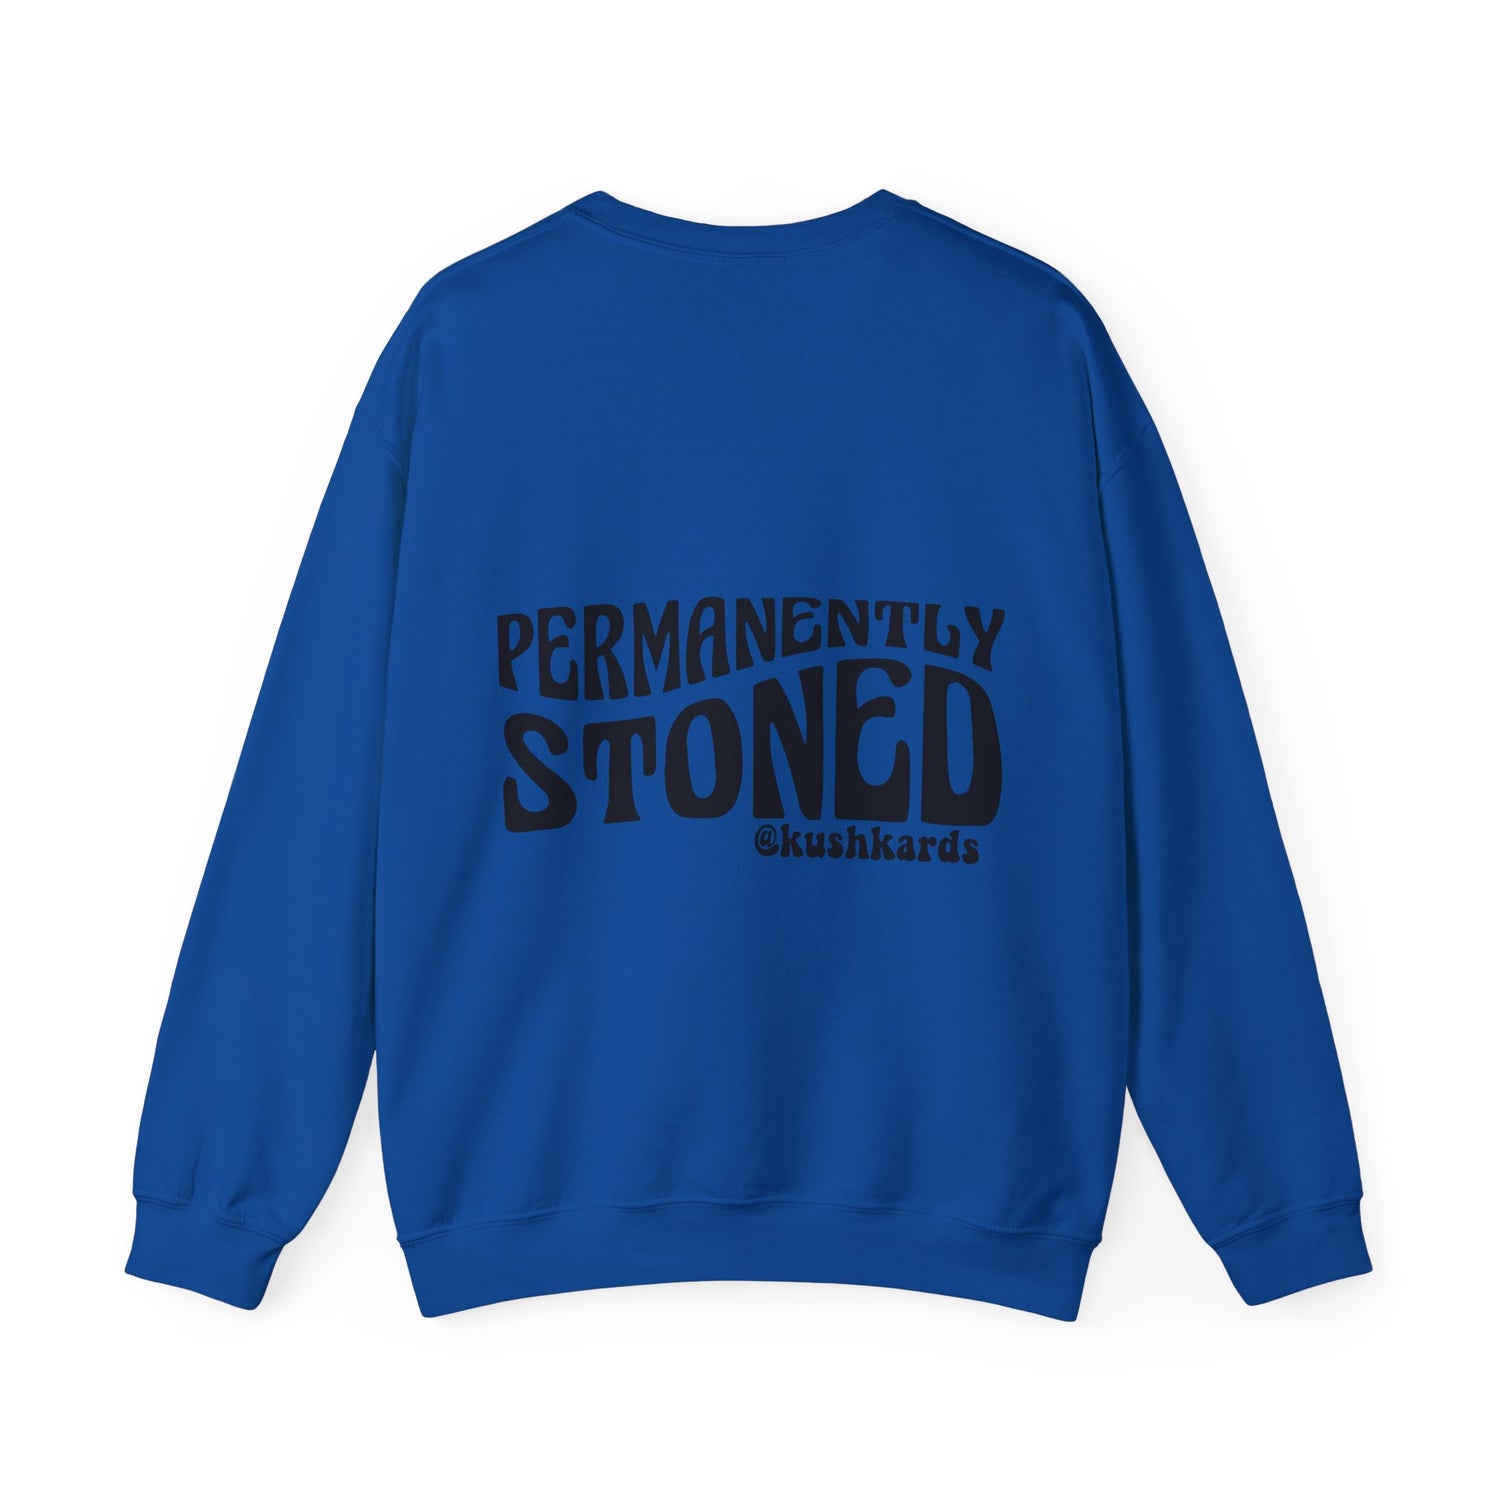 Permanently Stoned KushKards Unisex Heavy Blend™ Crewneck Sweatshirt